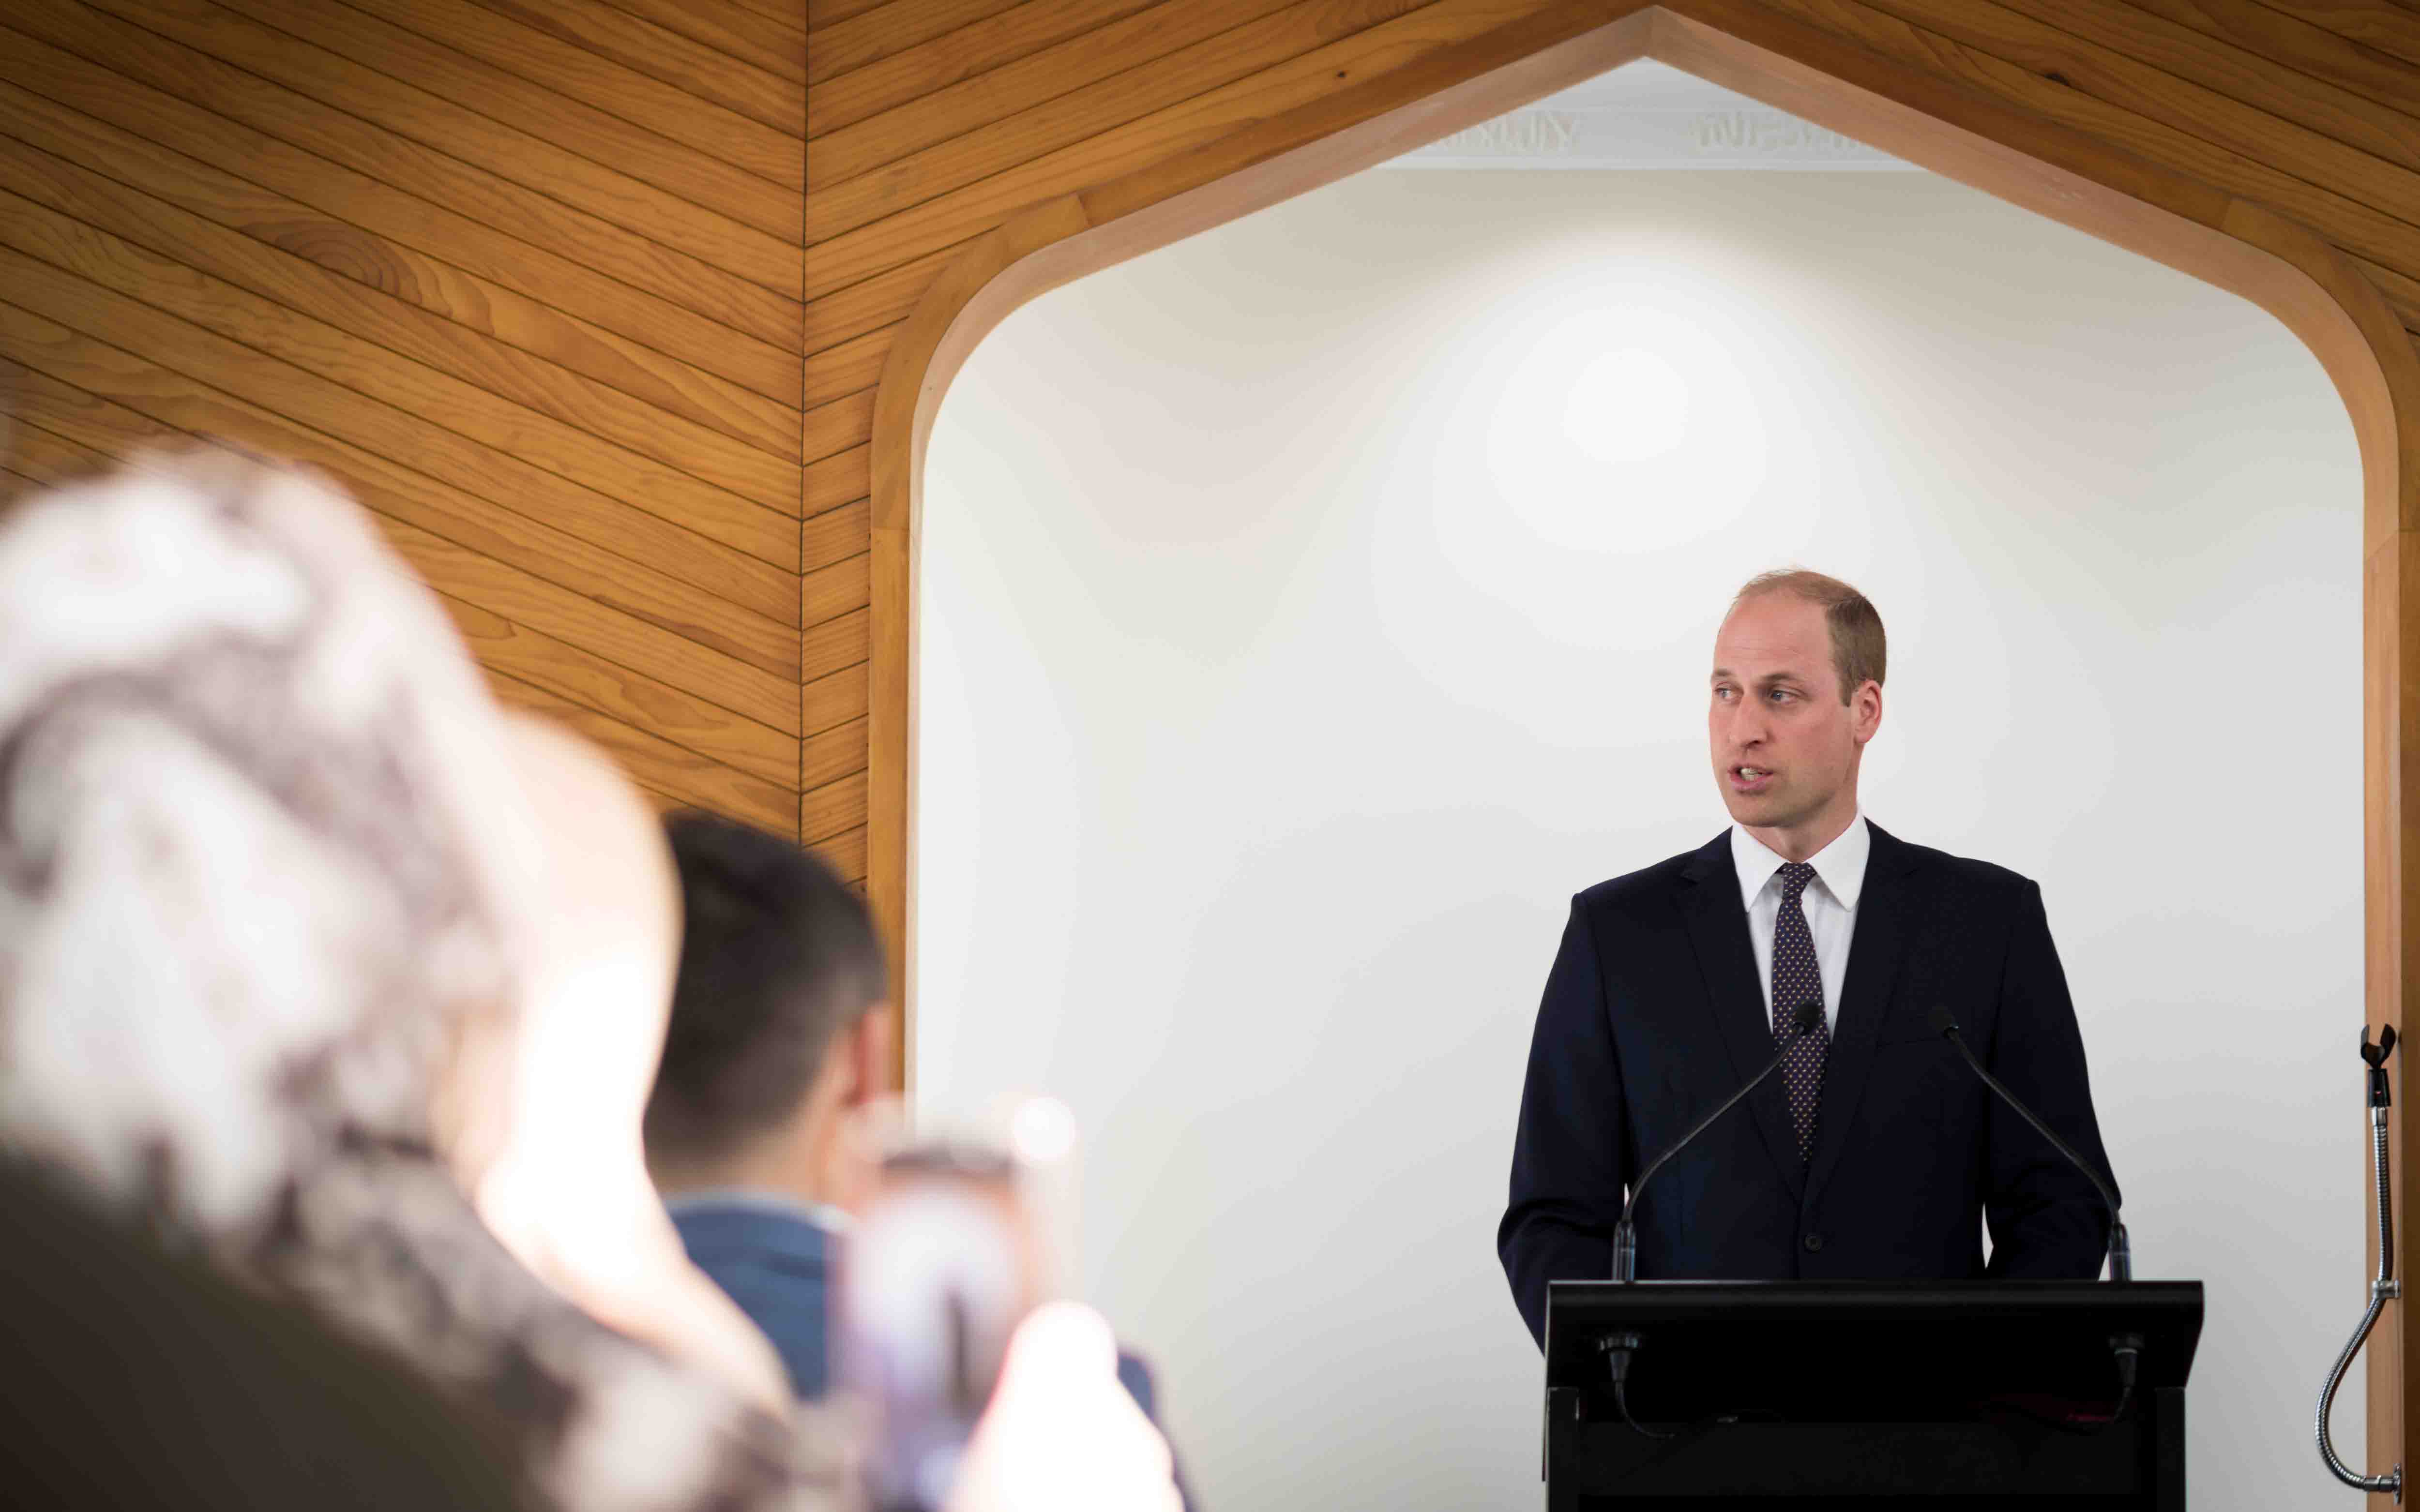 'Prince William speaks at the Al Noor Masjid